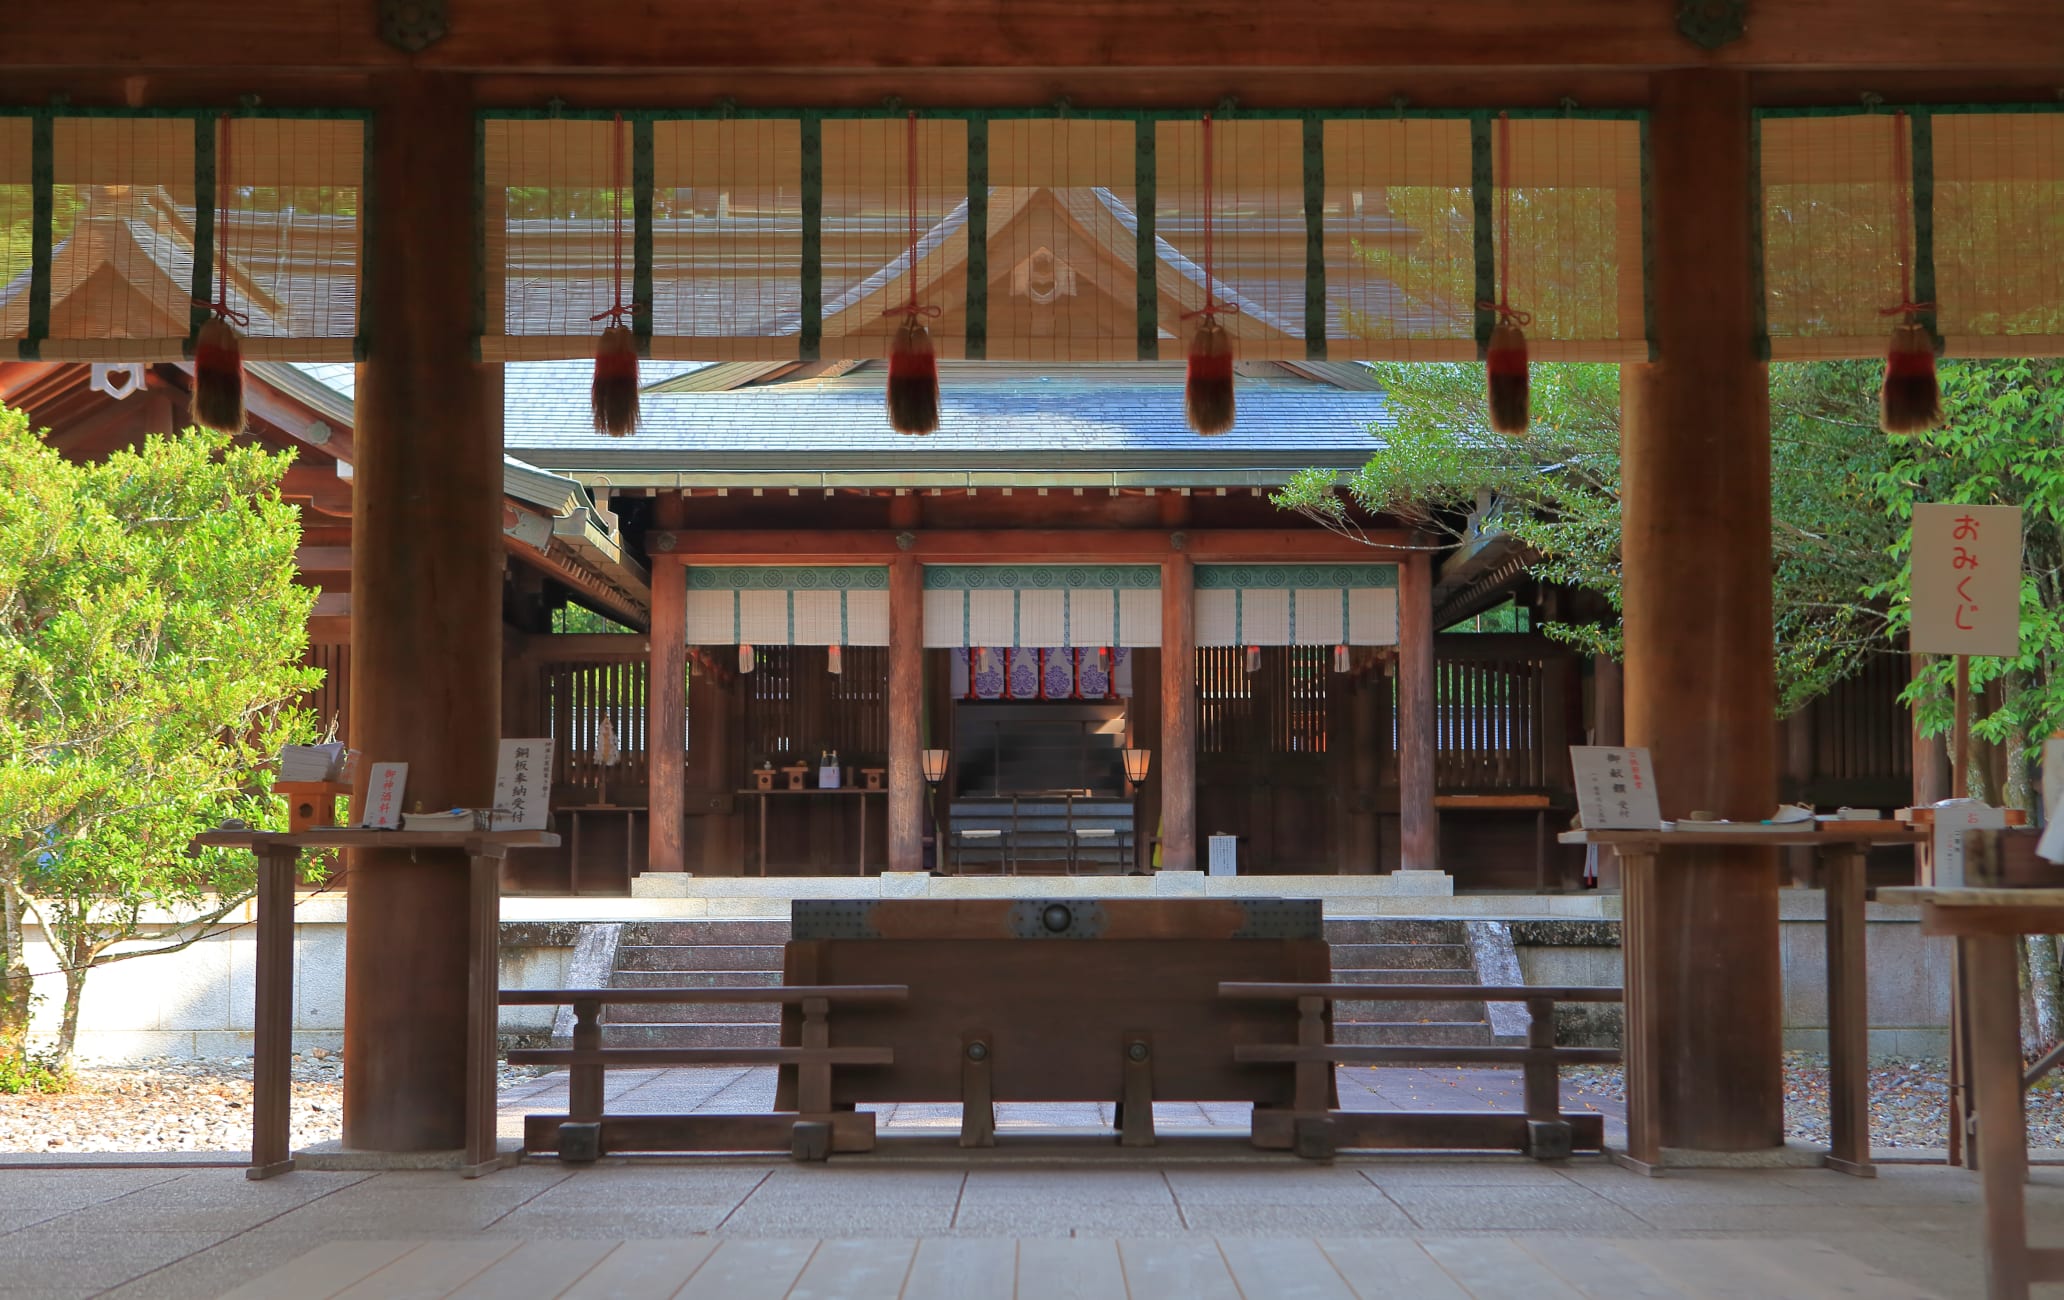 Yoshino-jingu Shrine